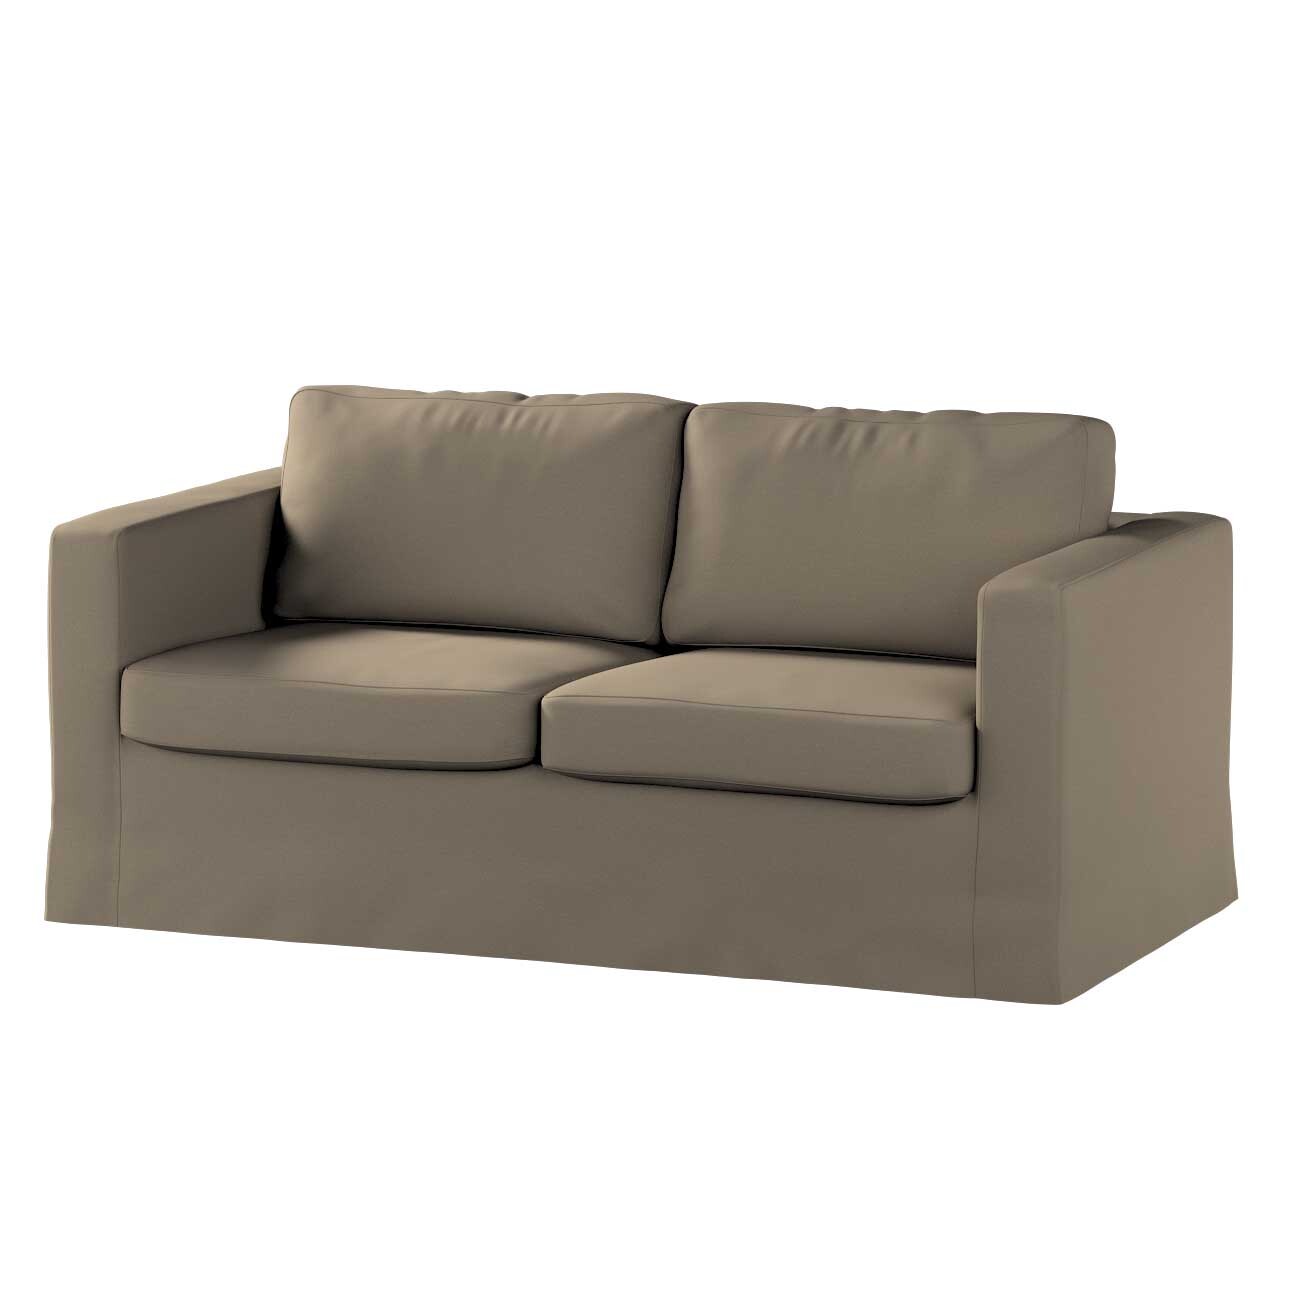 Bezug für Karlstad 2-Sitzer Sofa nicht ausklappbar, lang, mokka, Sofahusse, günstig online kaufen